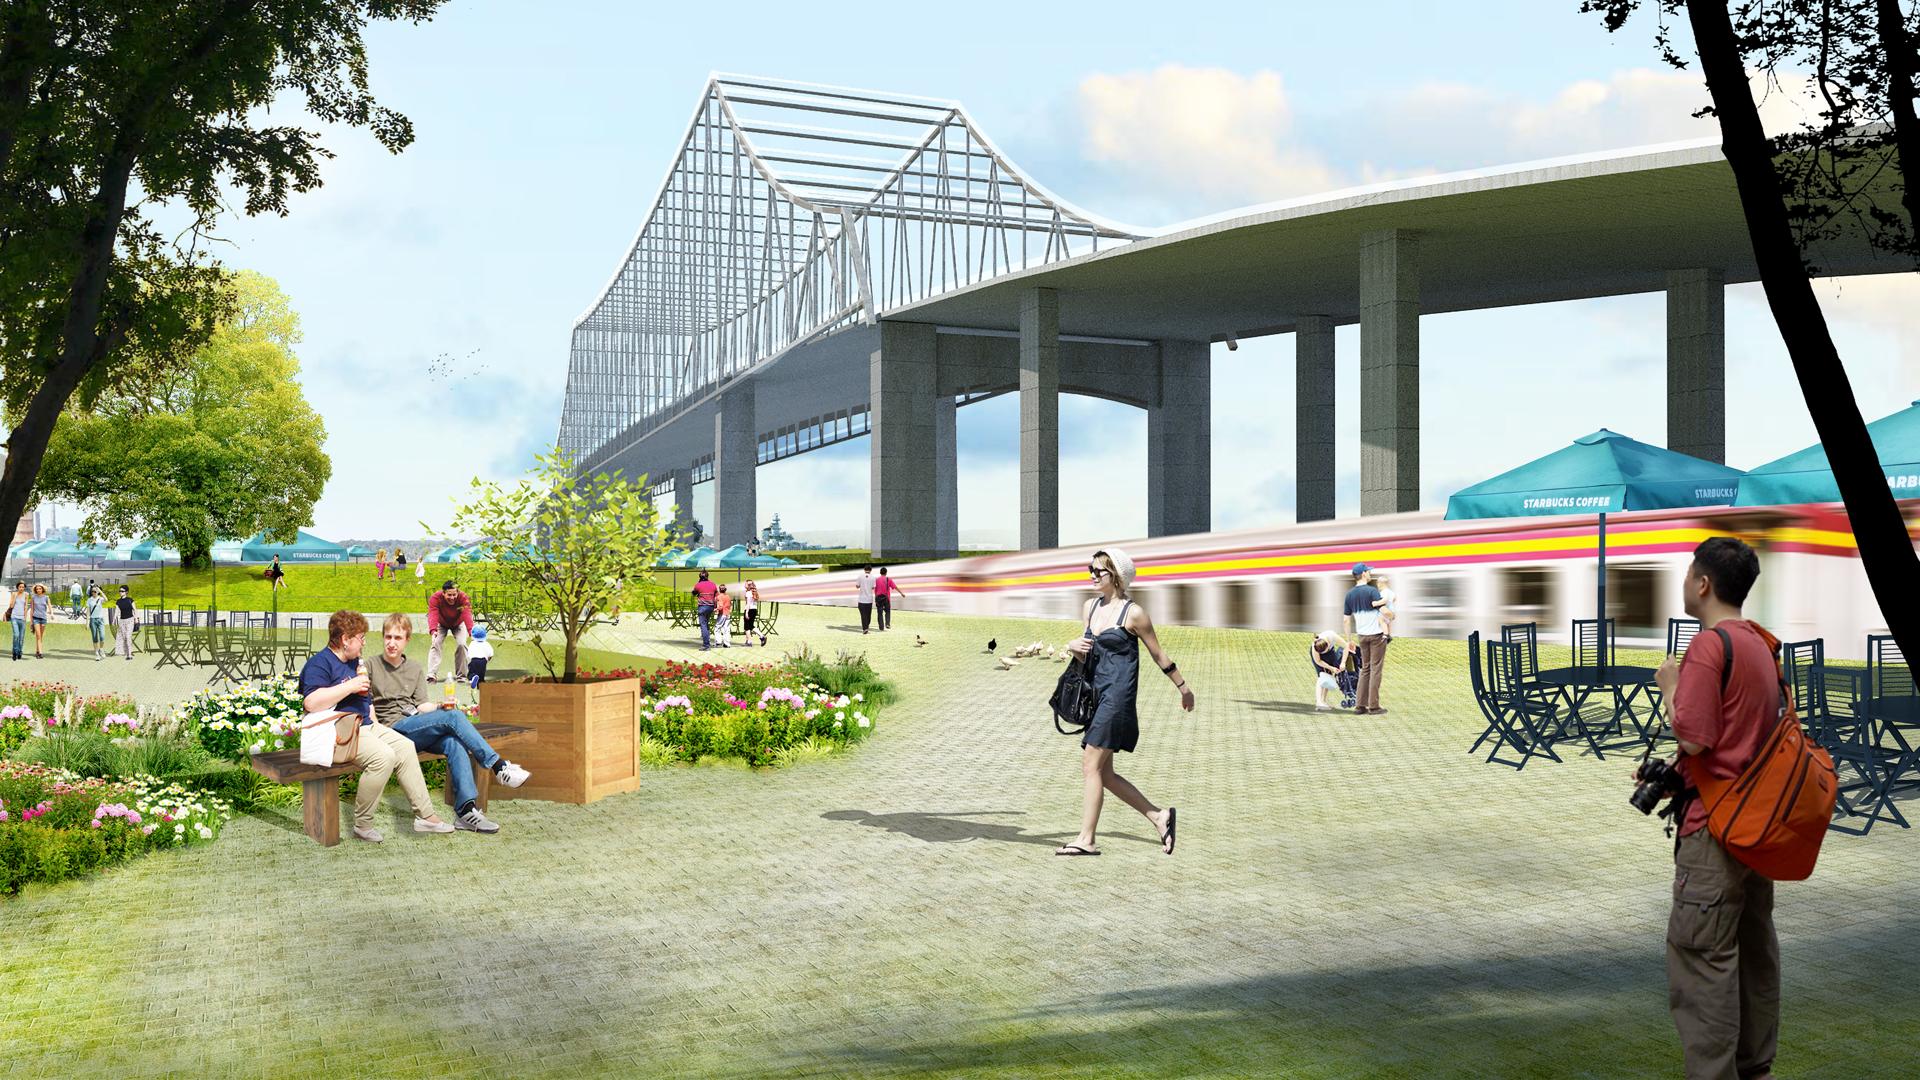 LDAR_Rui_Xie_Perspective-rendering-of-Train-Museum.jpg 